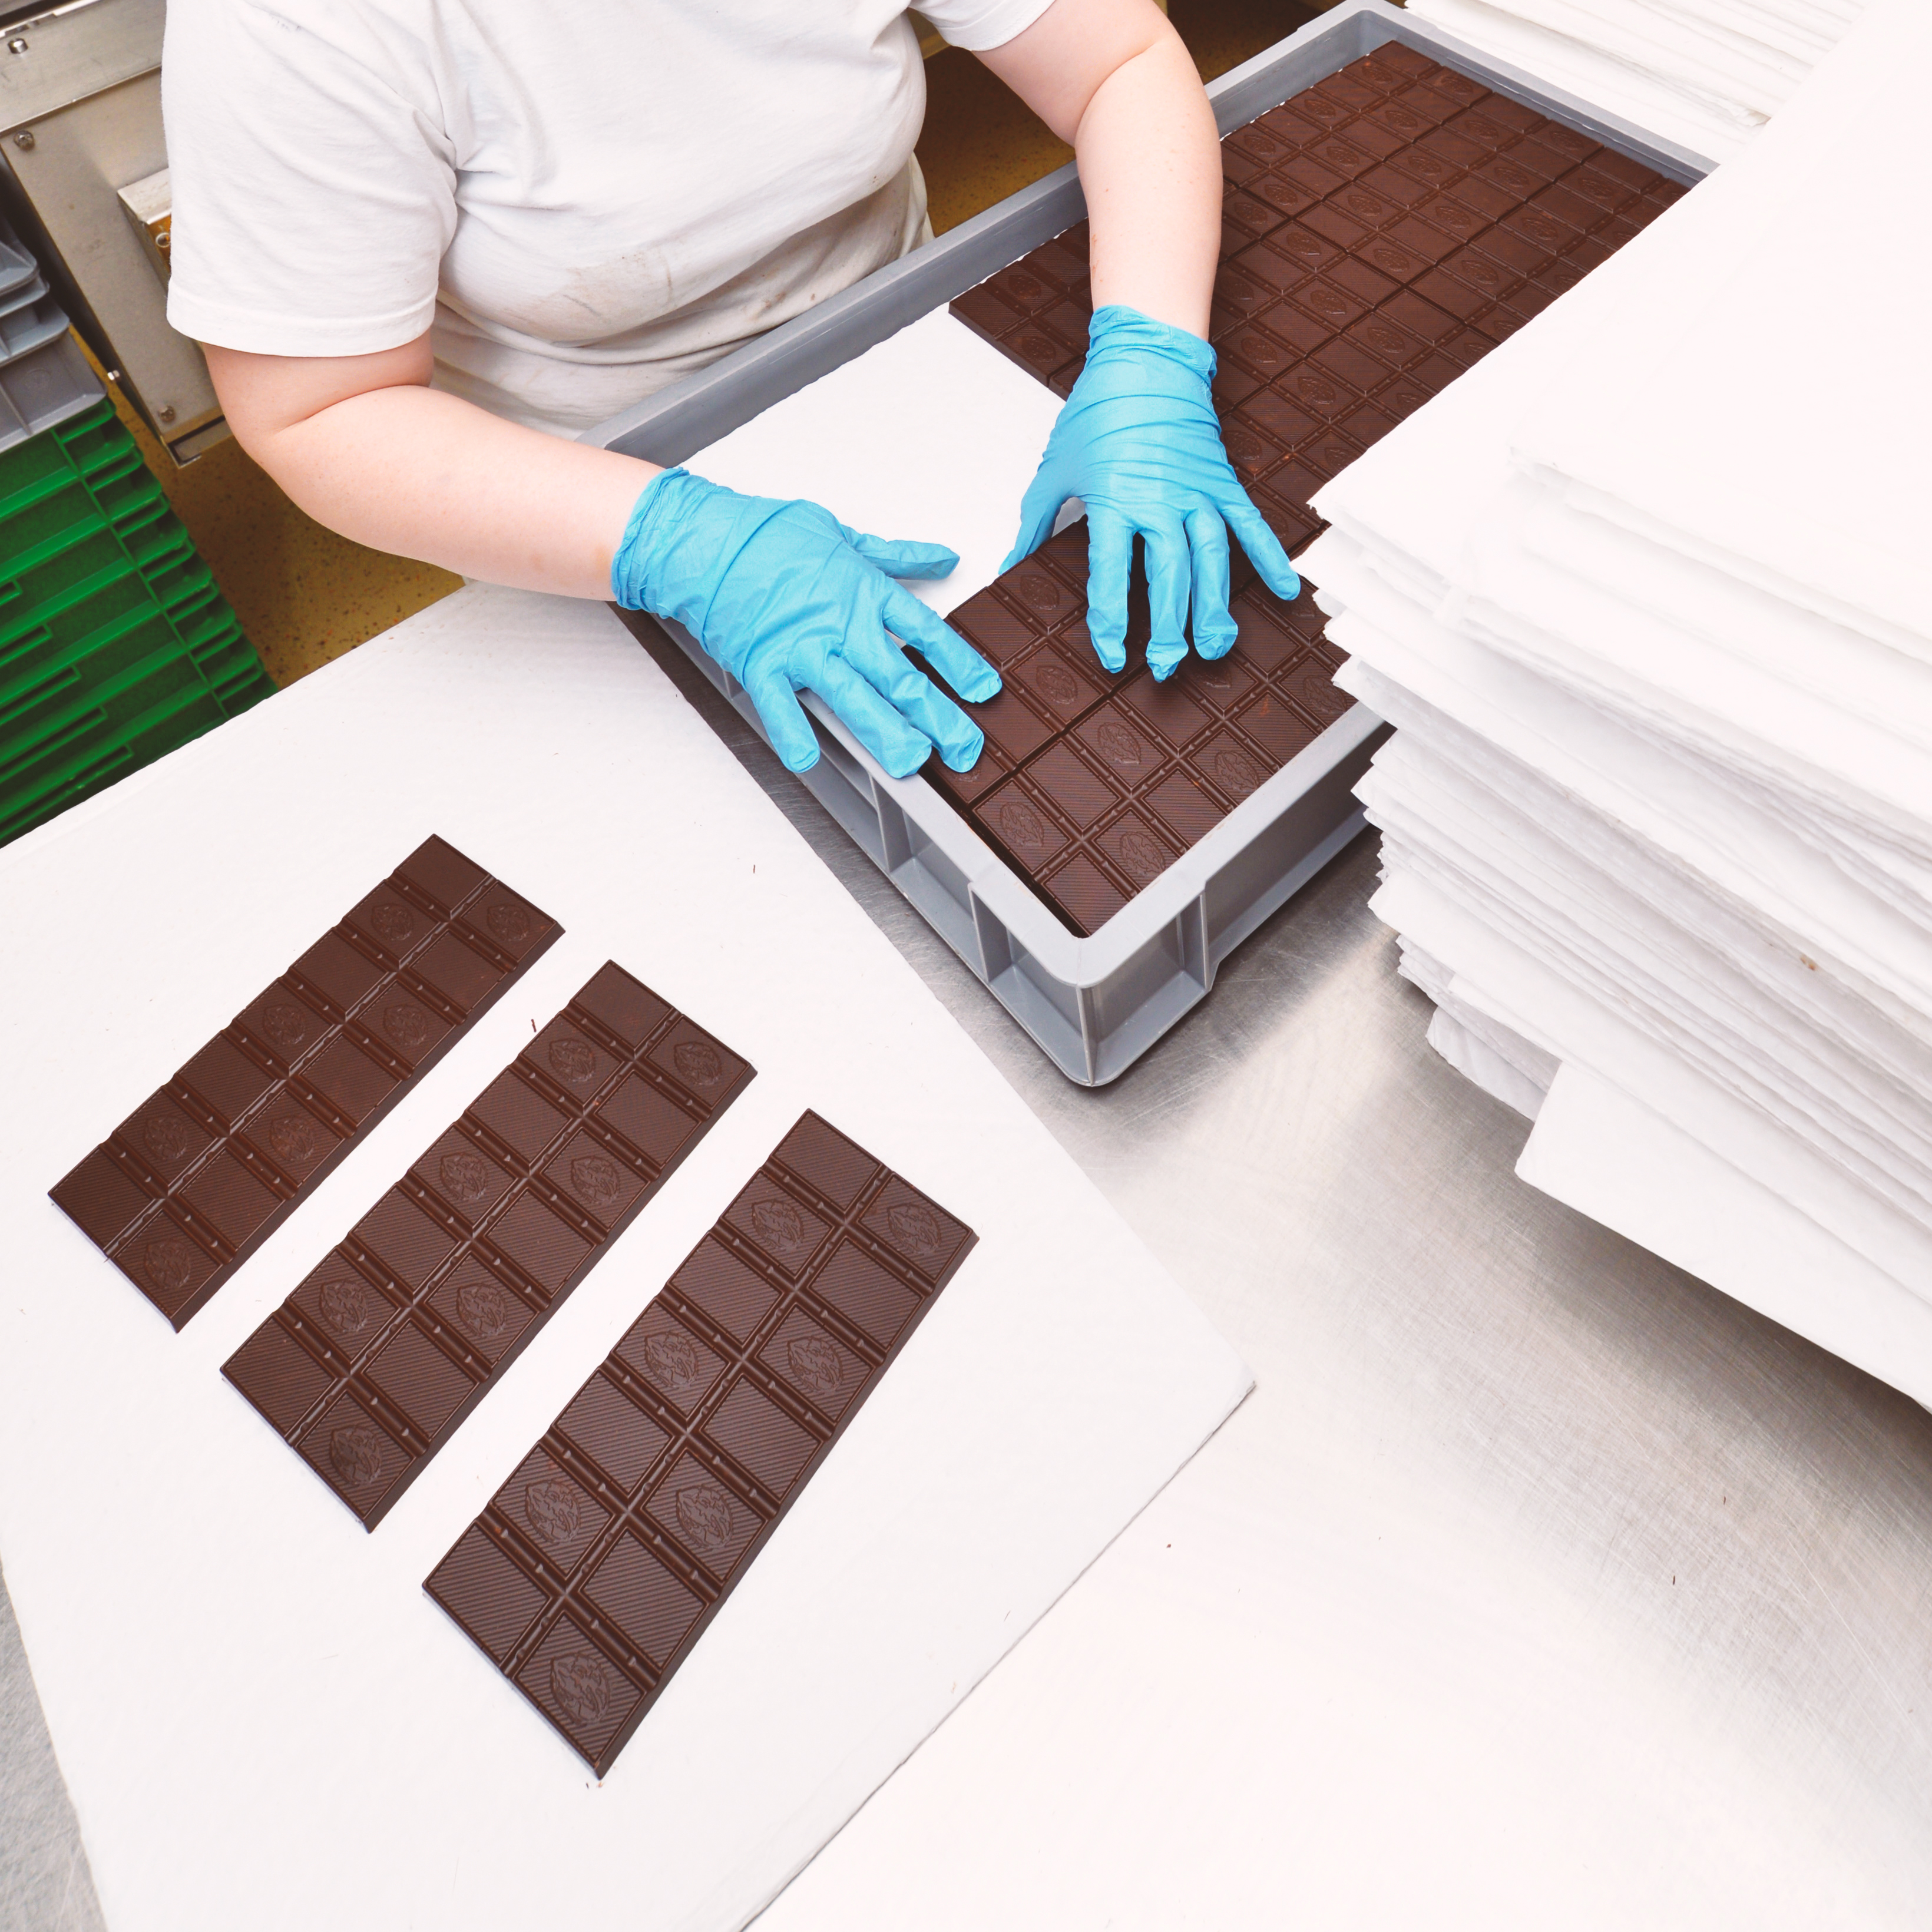 Schokoladen- und Süßwarenproduktion